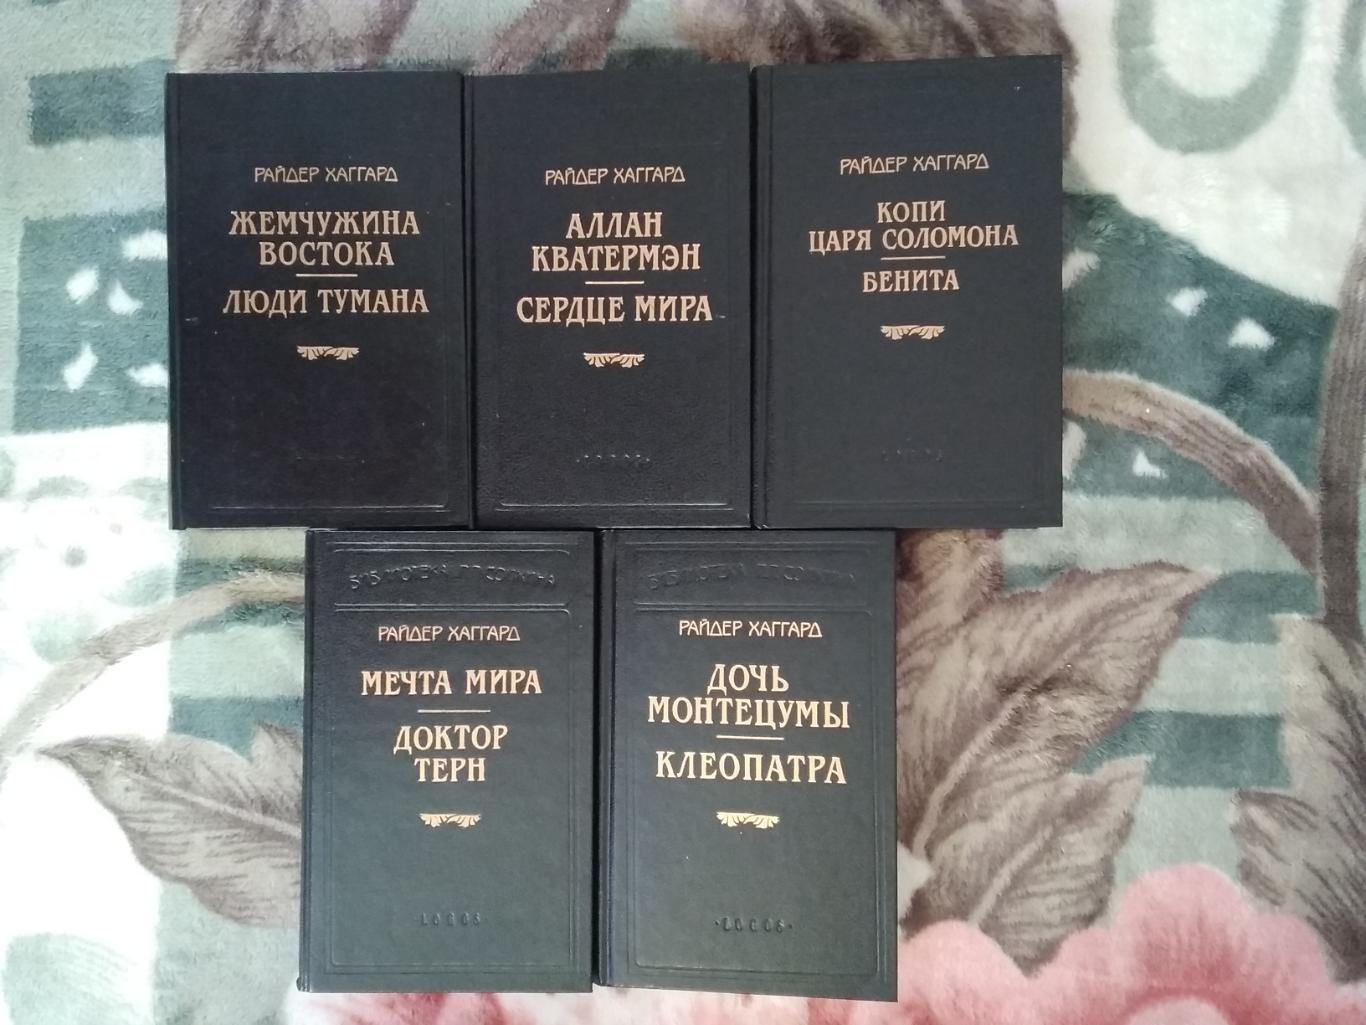 Райдер Хаггард (в 5 томах).Библиотека П.П.Сойкина.Санкт-Петербург. Логос 1996.